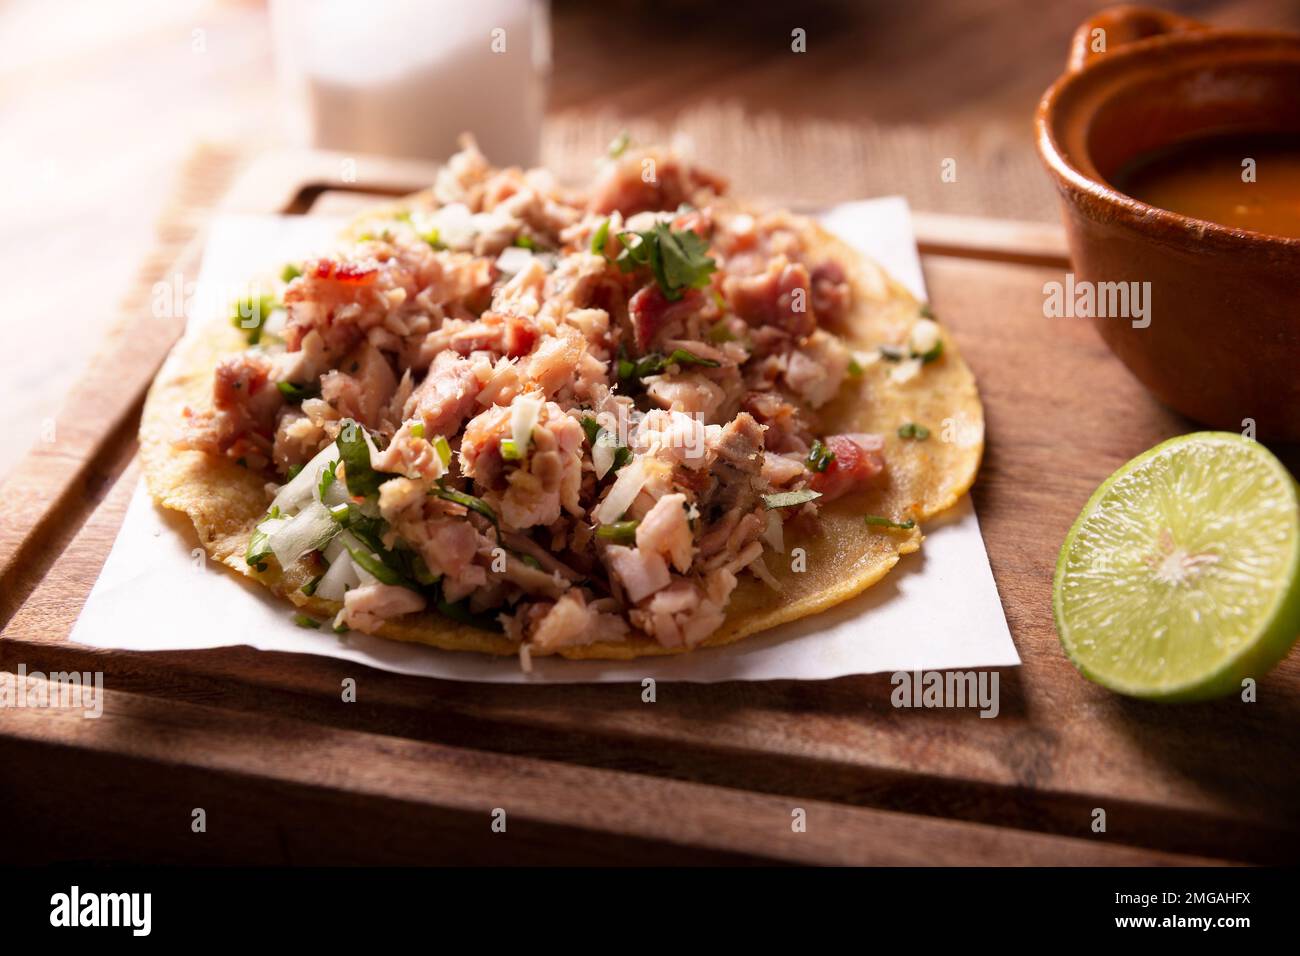 Taco de Carnitas. Tortilla au cornmeal avec porc frite. Apéritif mexicain traditionnel généralement accompagné de coriandre, d'oignon et de sauce chaude. Banque D'Images